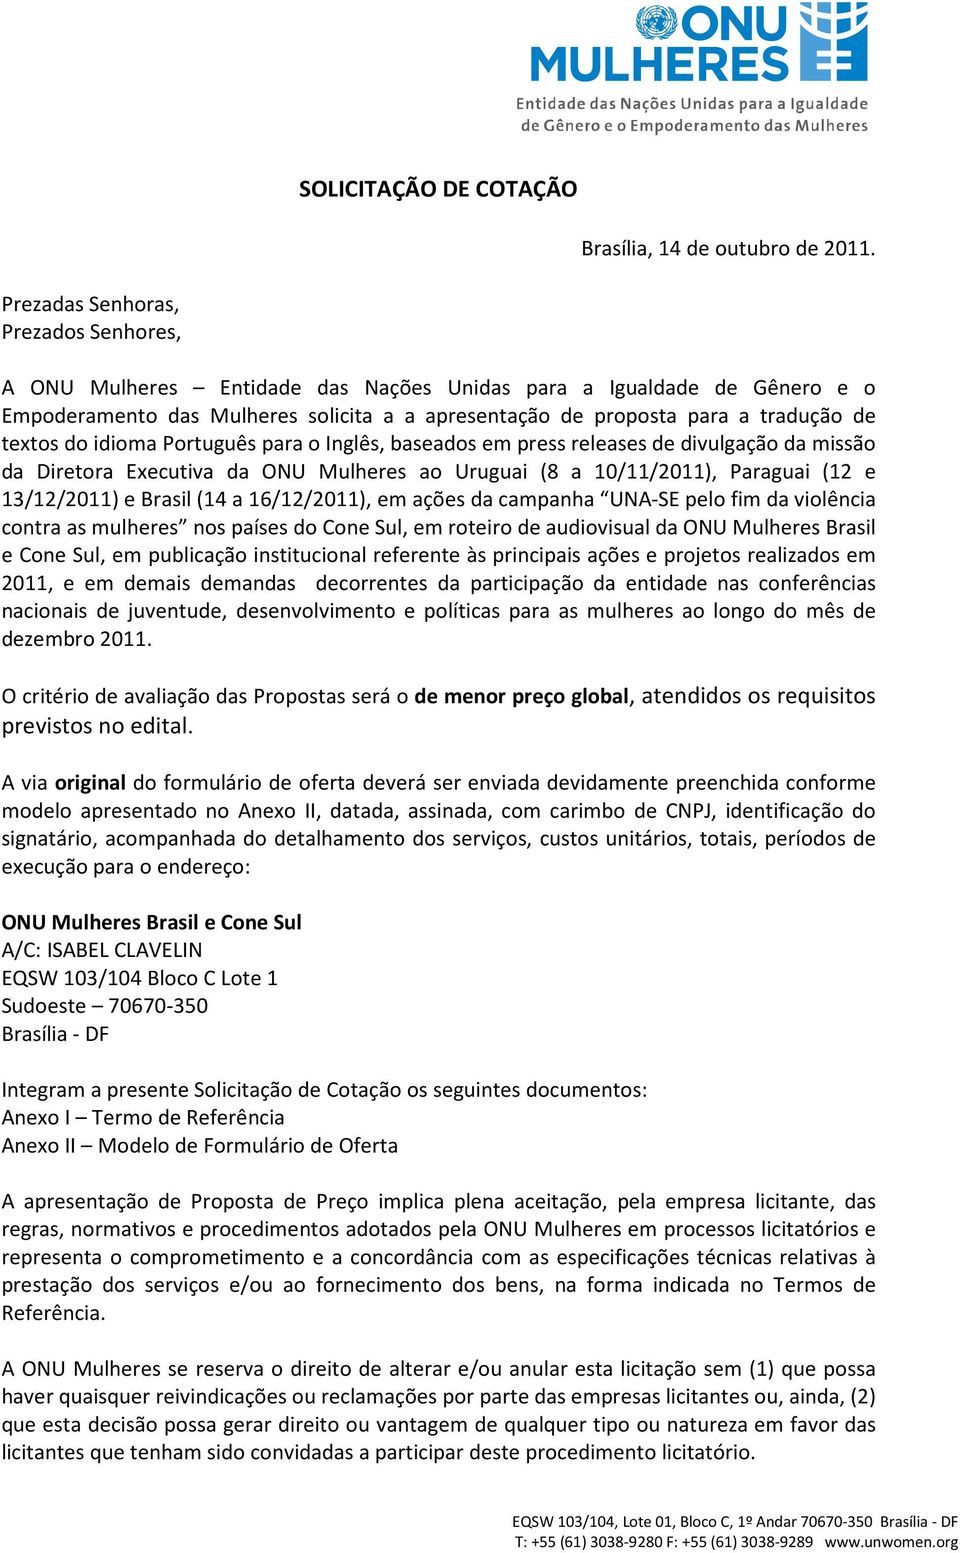 textos do idioma Português para o Inglês, baseados em press releases de divulgação da missão da Diretora Executiva da ONU Mulheres ao Uruguai (8 a 10/11/2011), Paraguai (12 e 13/12/2011) e Brasil (14